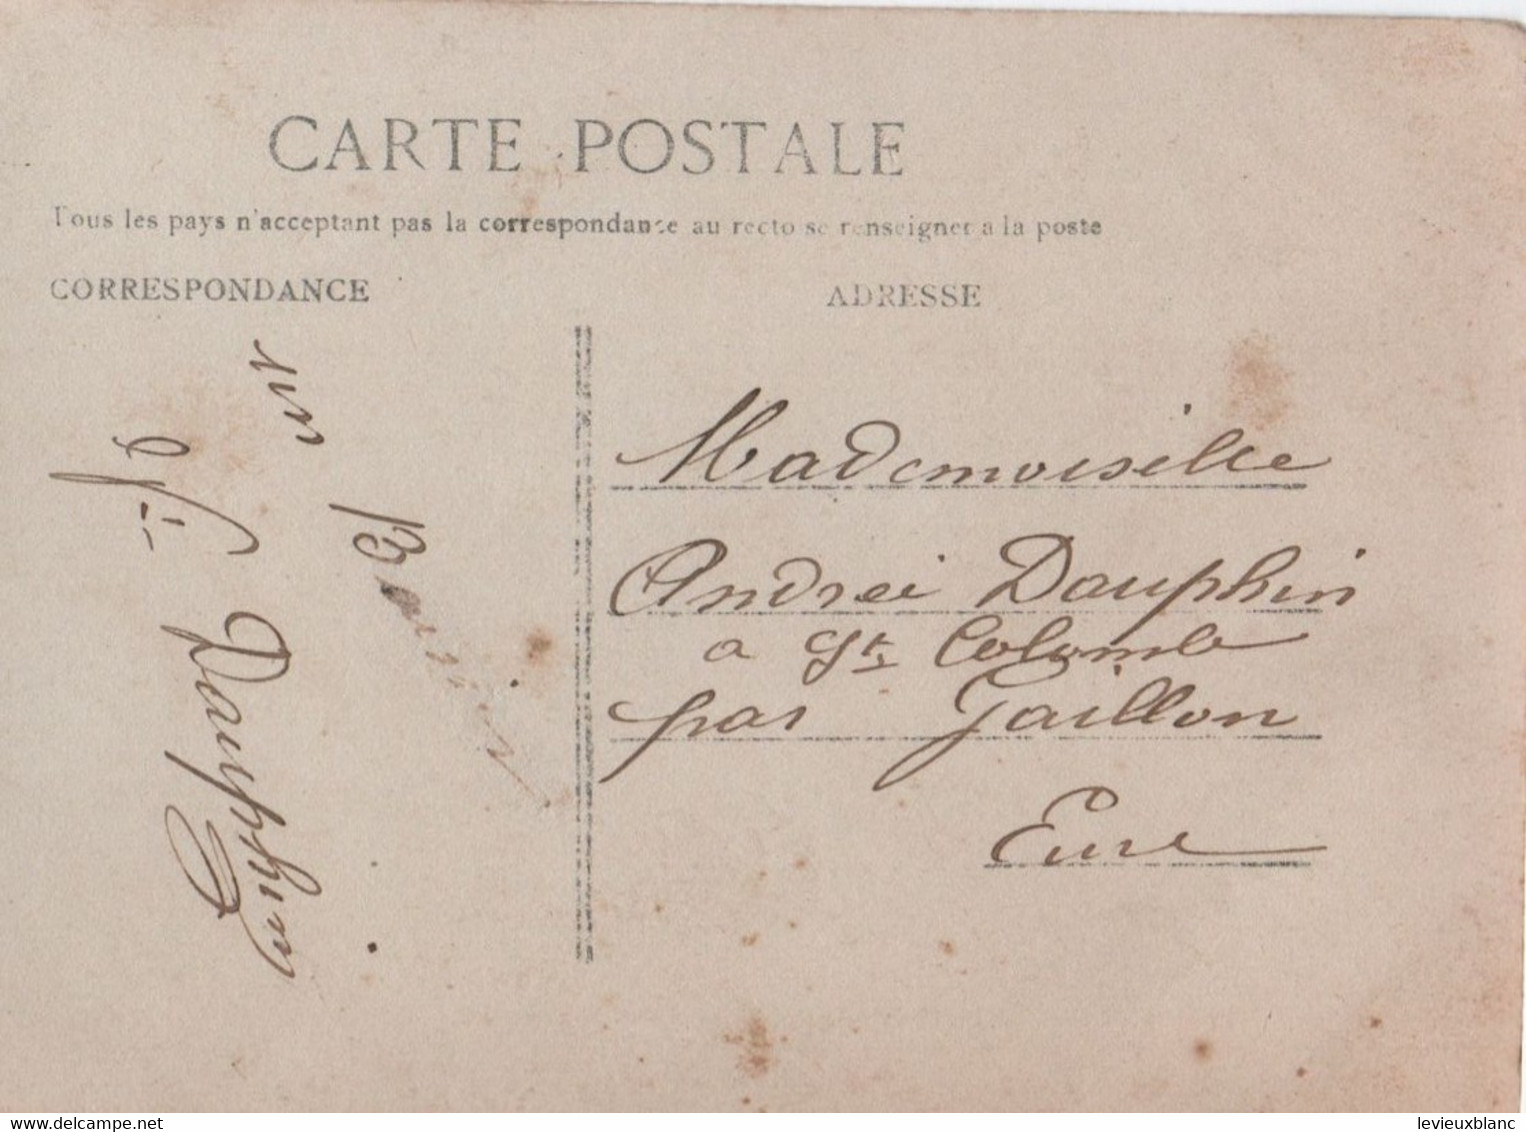 6 Cartes Postales Historiques/ JEANNE D'ARC/ Lacroix Phot./ N°596/Dauphin/Ste Colombe, Prés GAILLON/Vers 1912  CPDIV351 - Photos